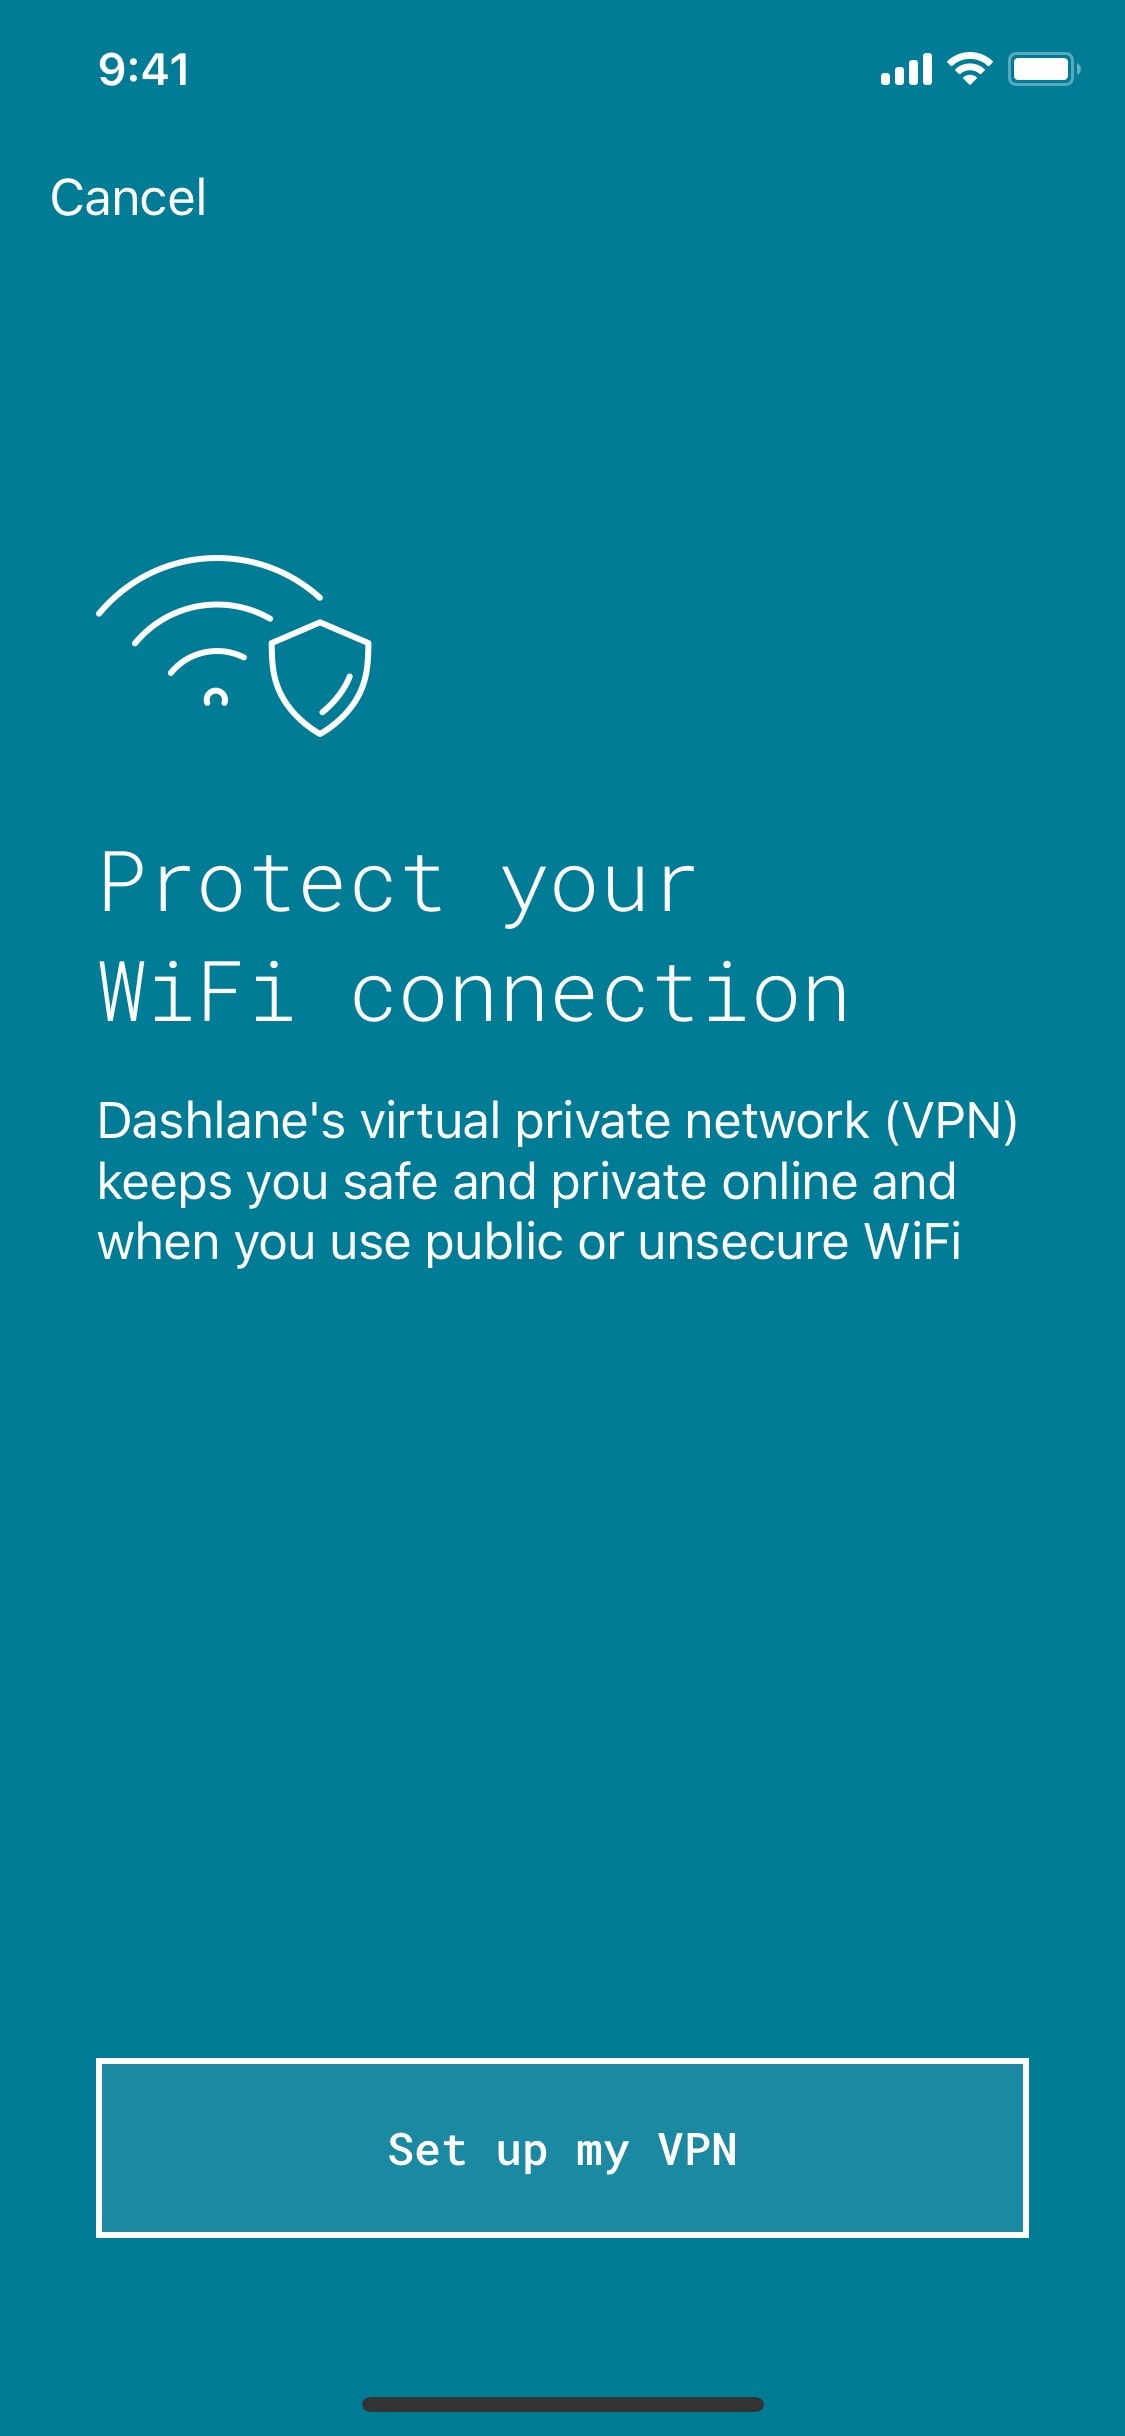 Stay safe on public Wi-Fi with Dashlane VPN on iOS.